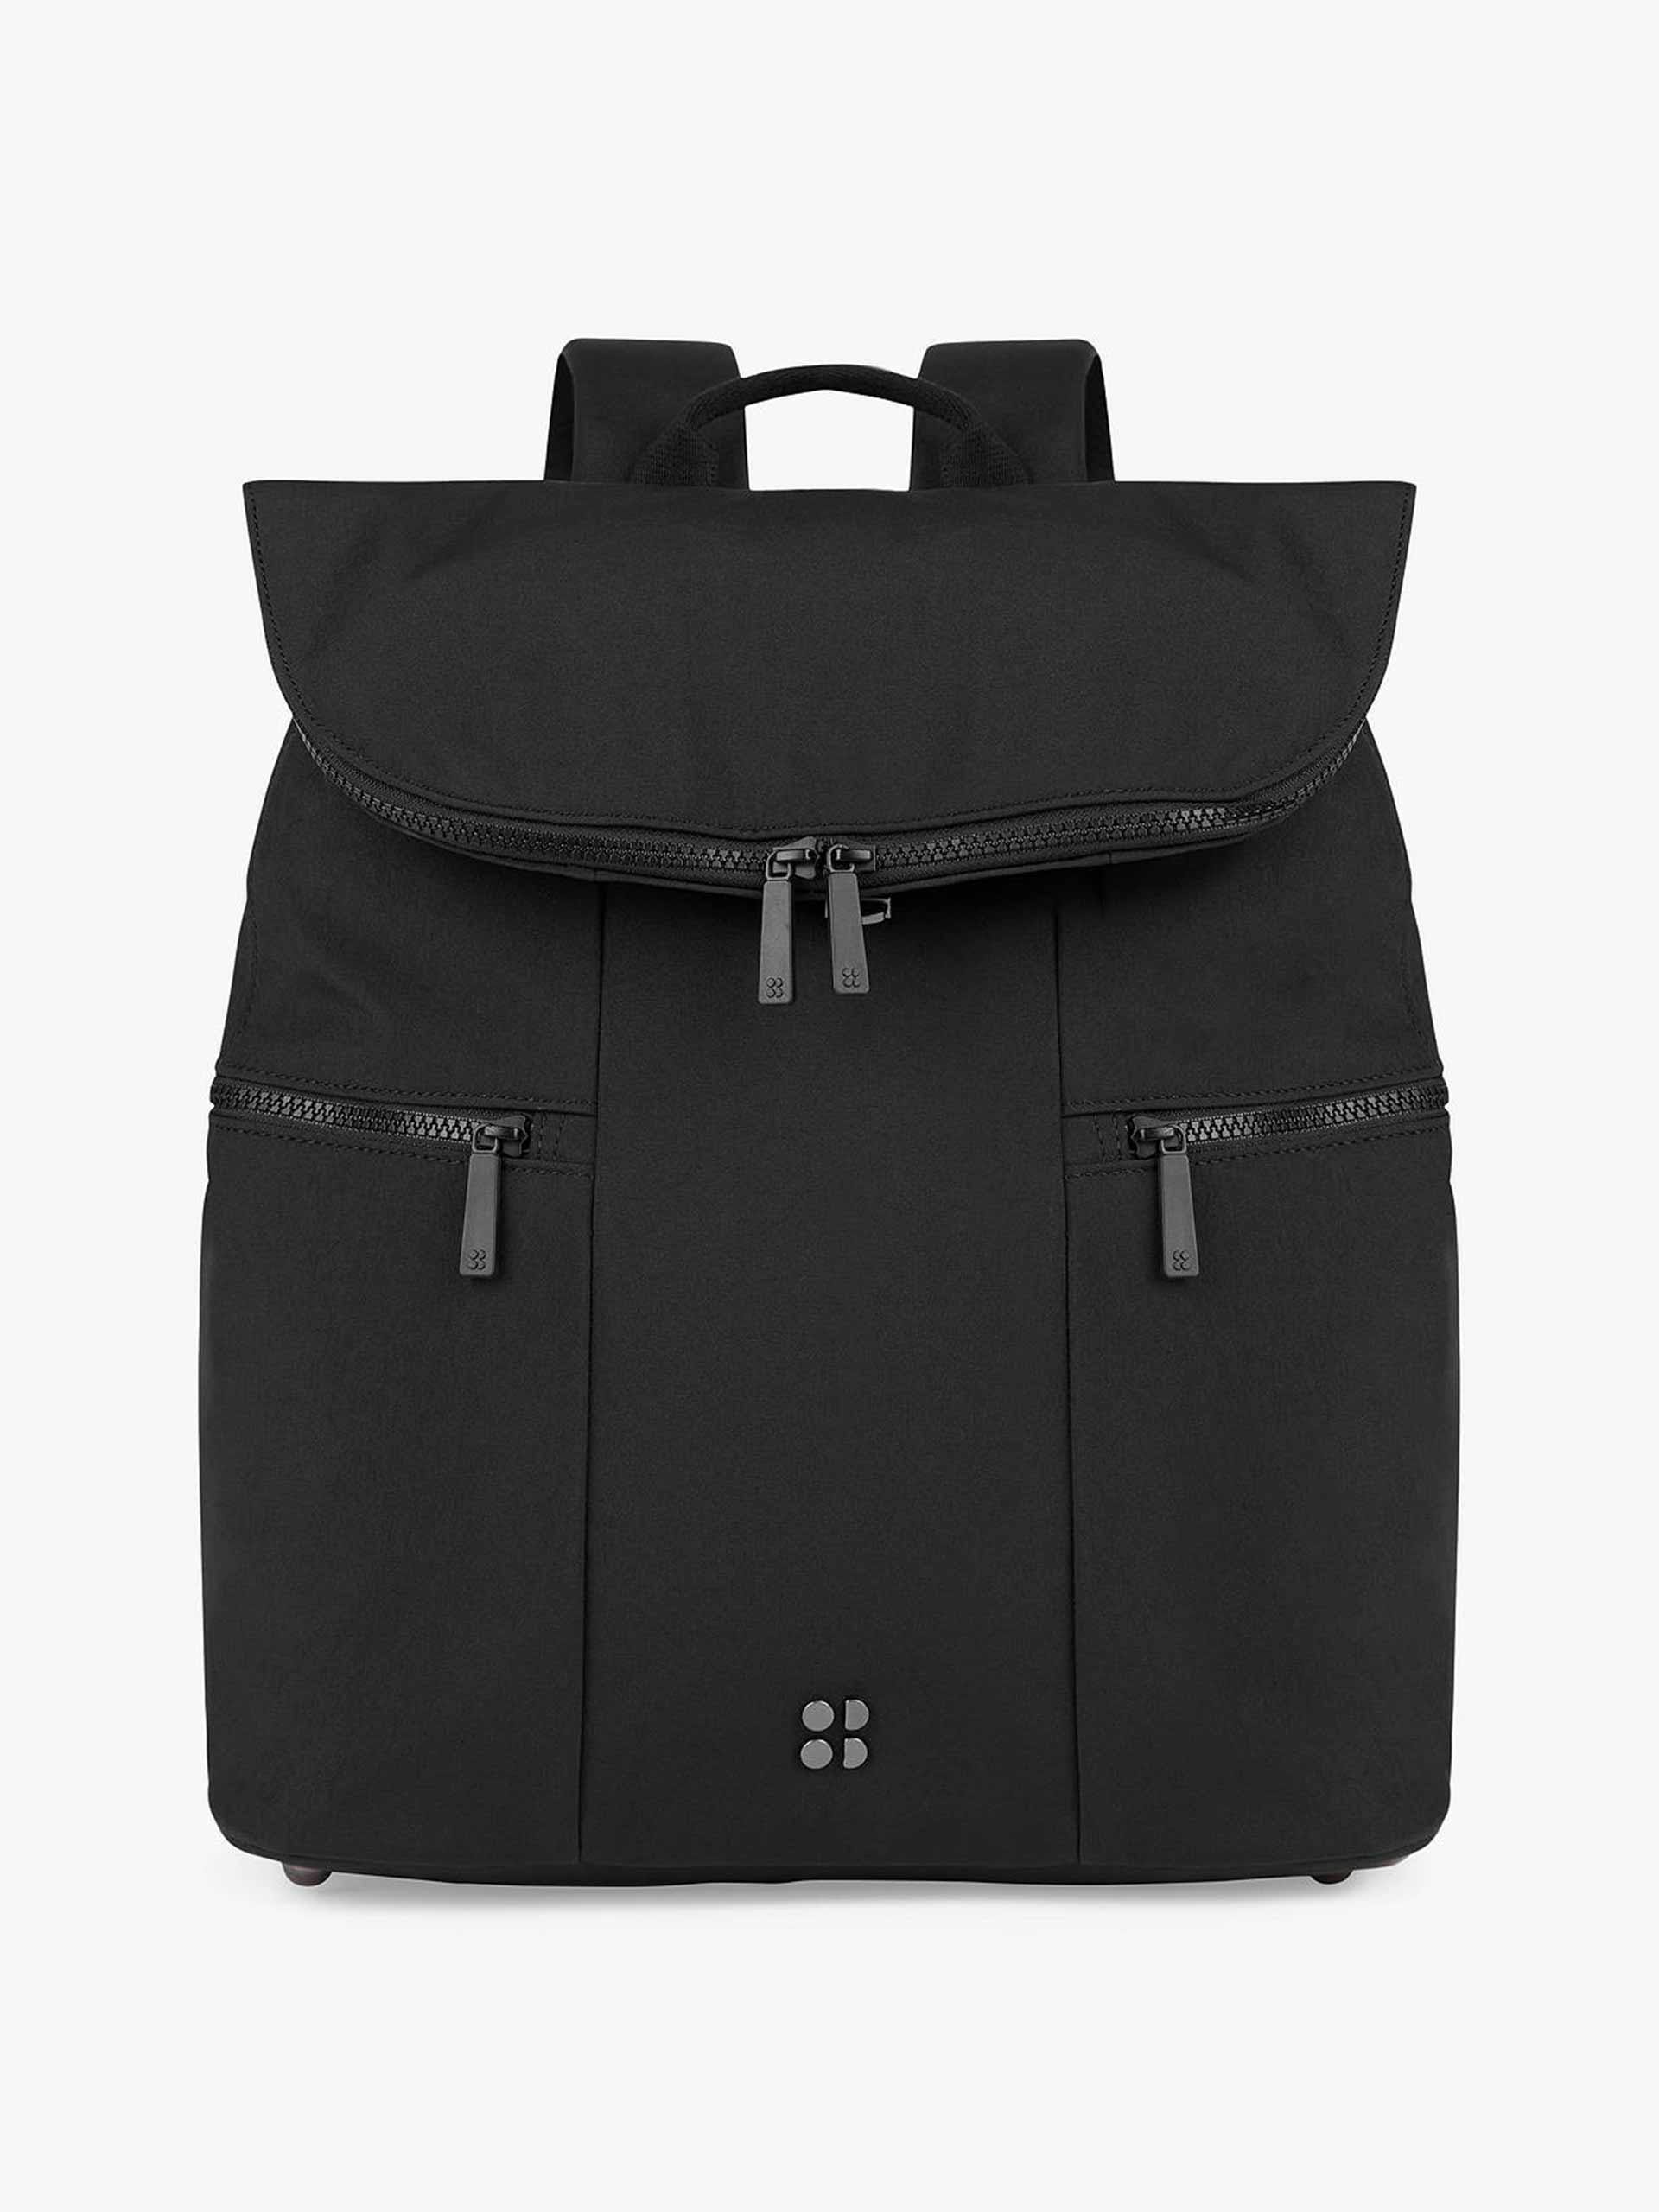 Black sport backpack